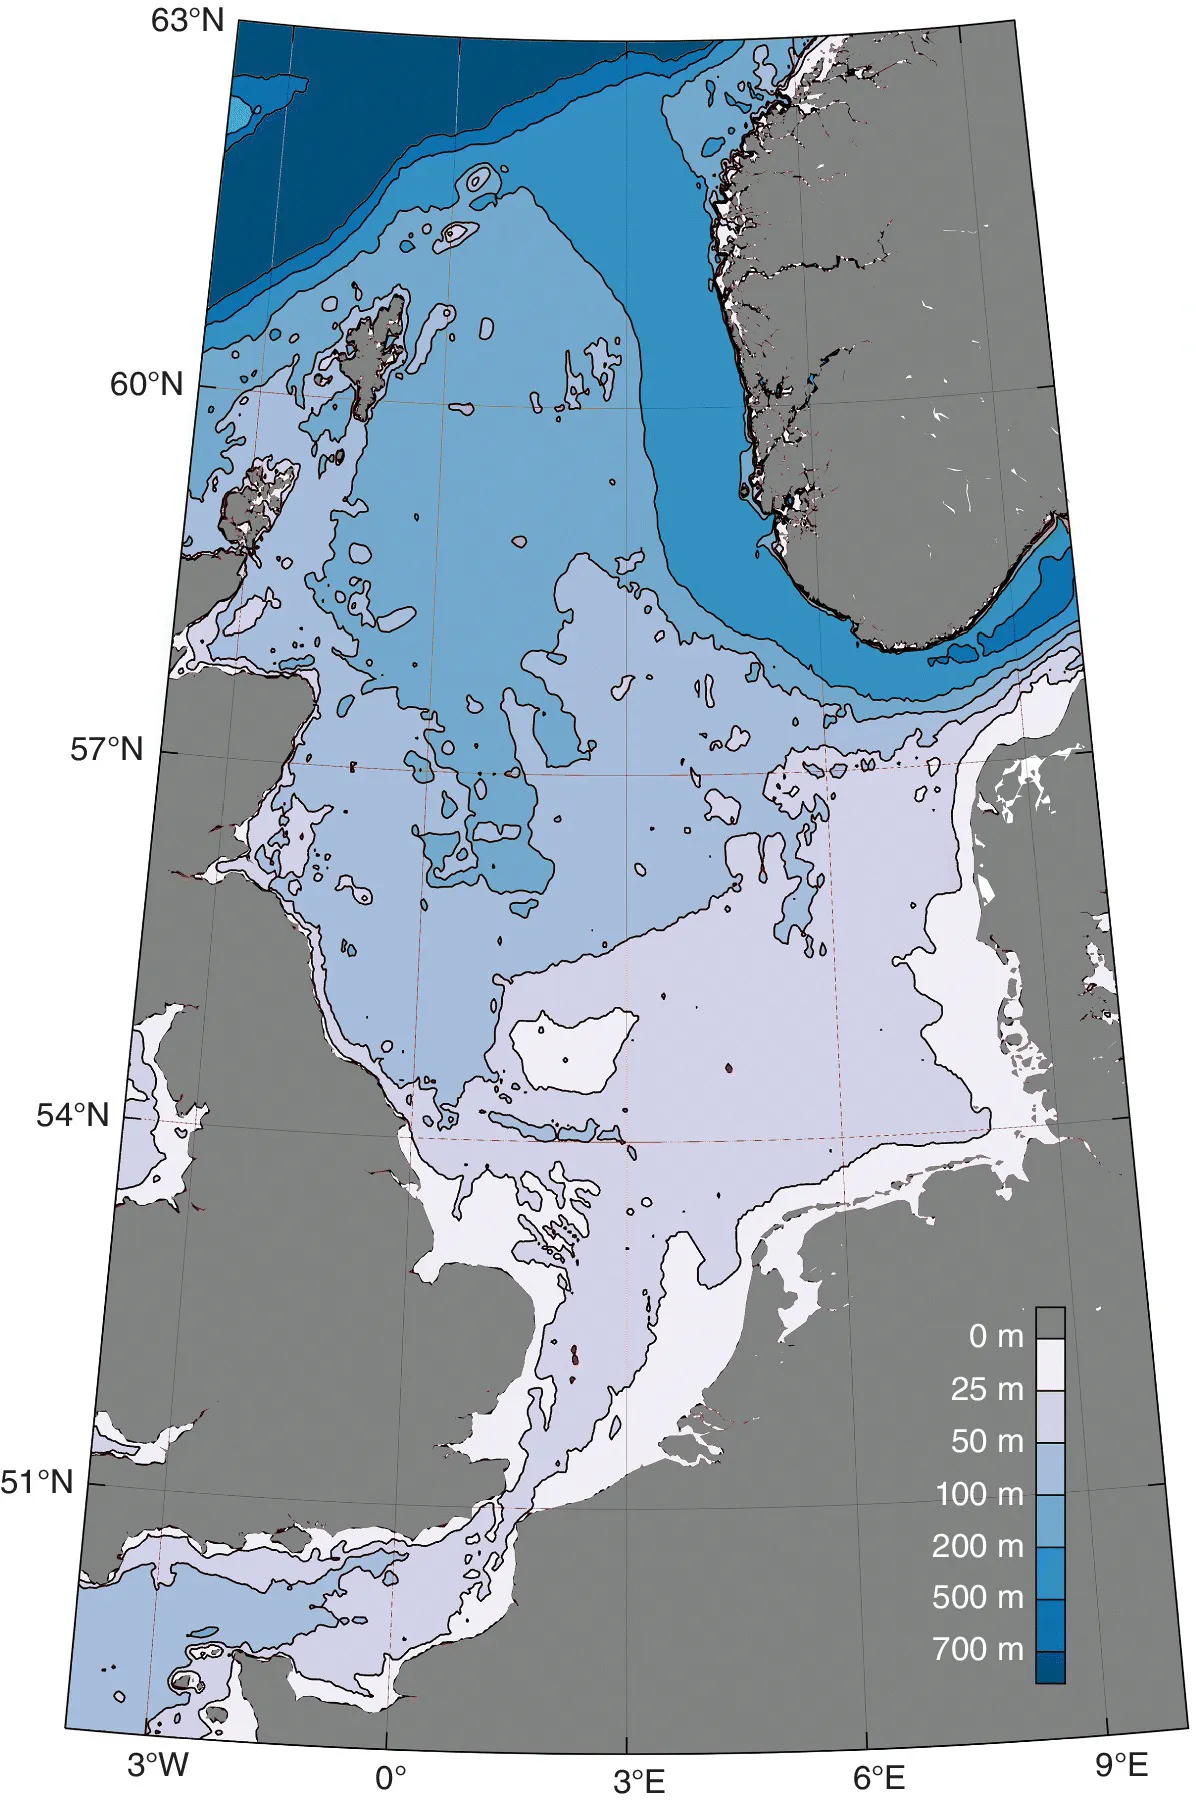 Topographic map of the North Sea depicting 63°N, 60°N, 57°N, 54°N, and 51°N.